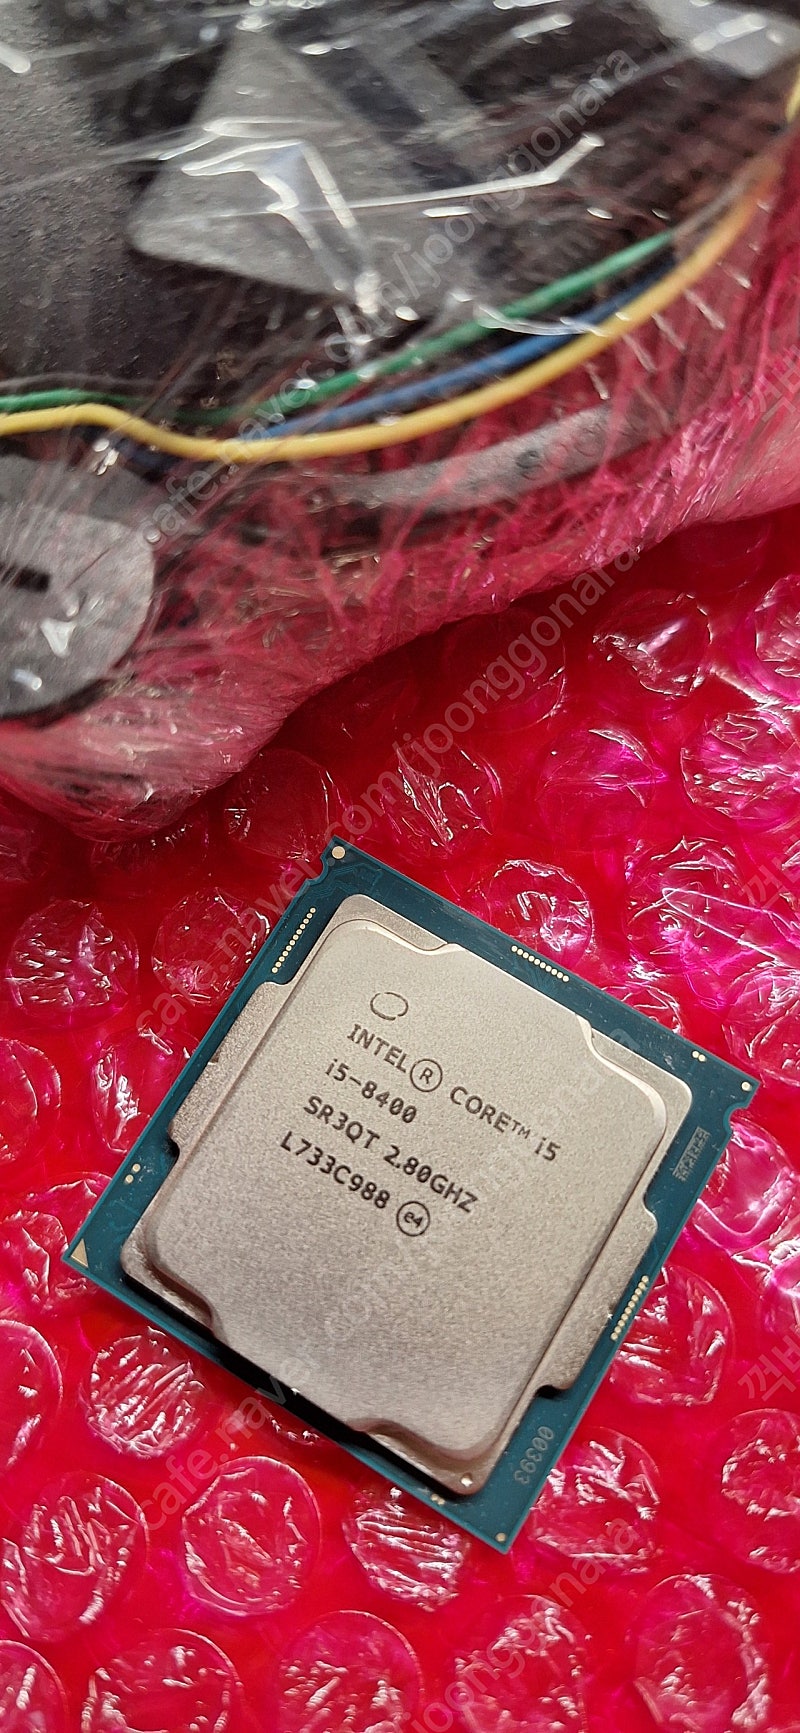 인텔 i5 8400 CPU + 기쿨